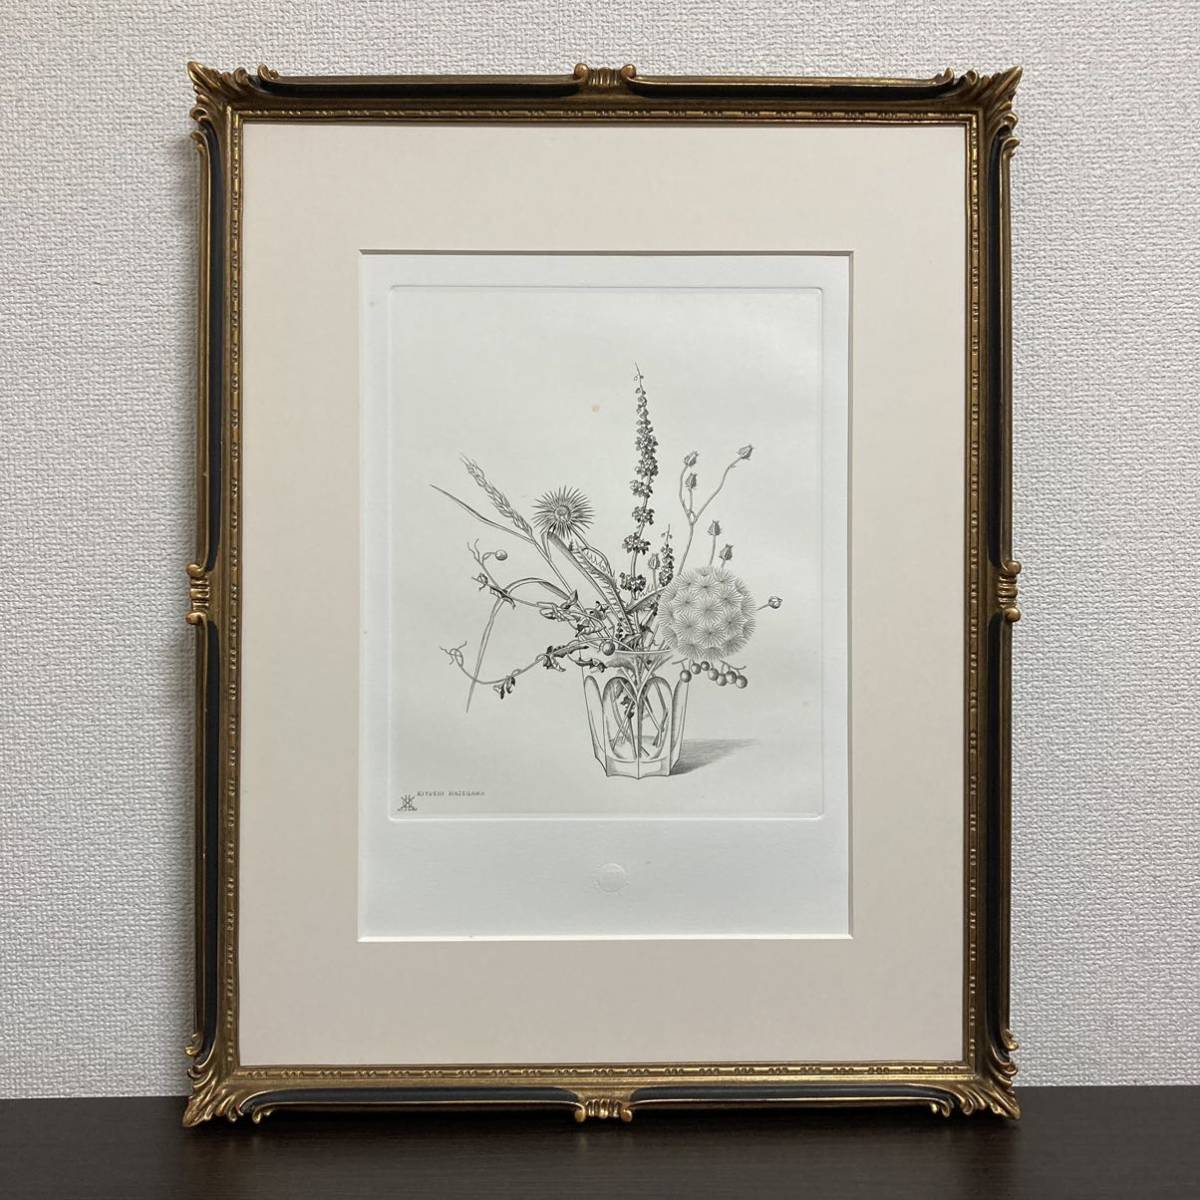 [Autenticidad garantizada] Kiyoshi Hasegawa Flores silvestres en una taza Grabado Enmarcado Pintura Impresión en placa de cobre, obra de arte, imprimir, impresión en placa de cobre, grabando